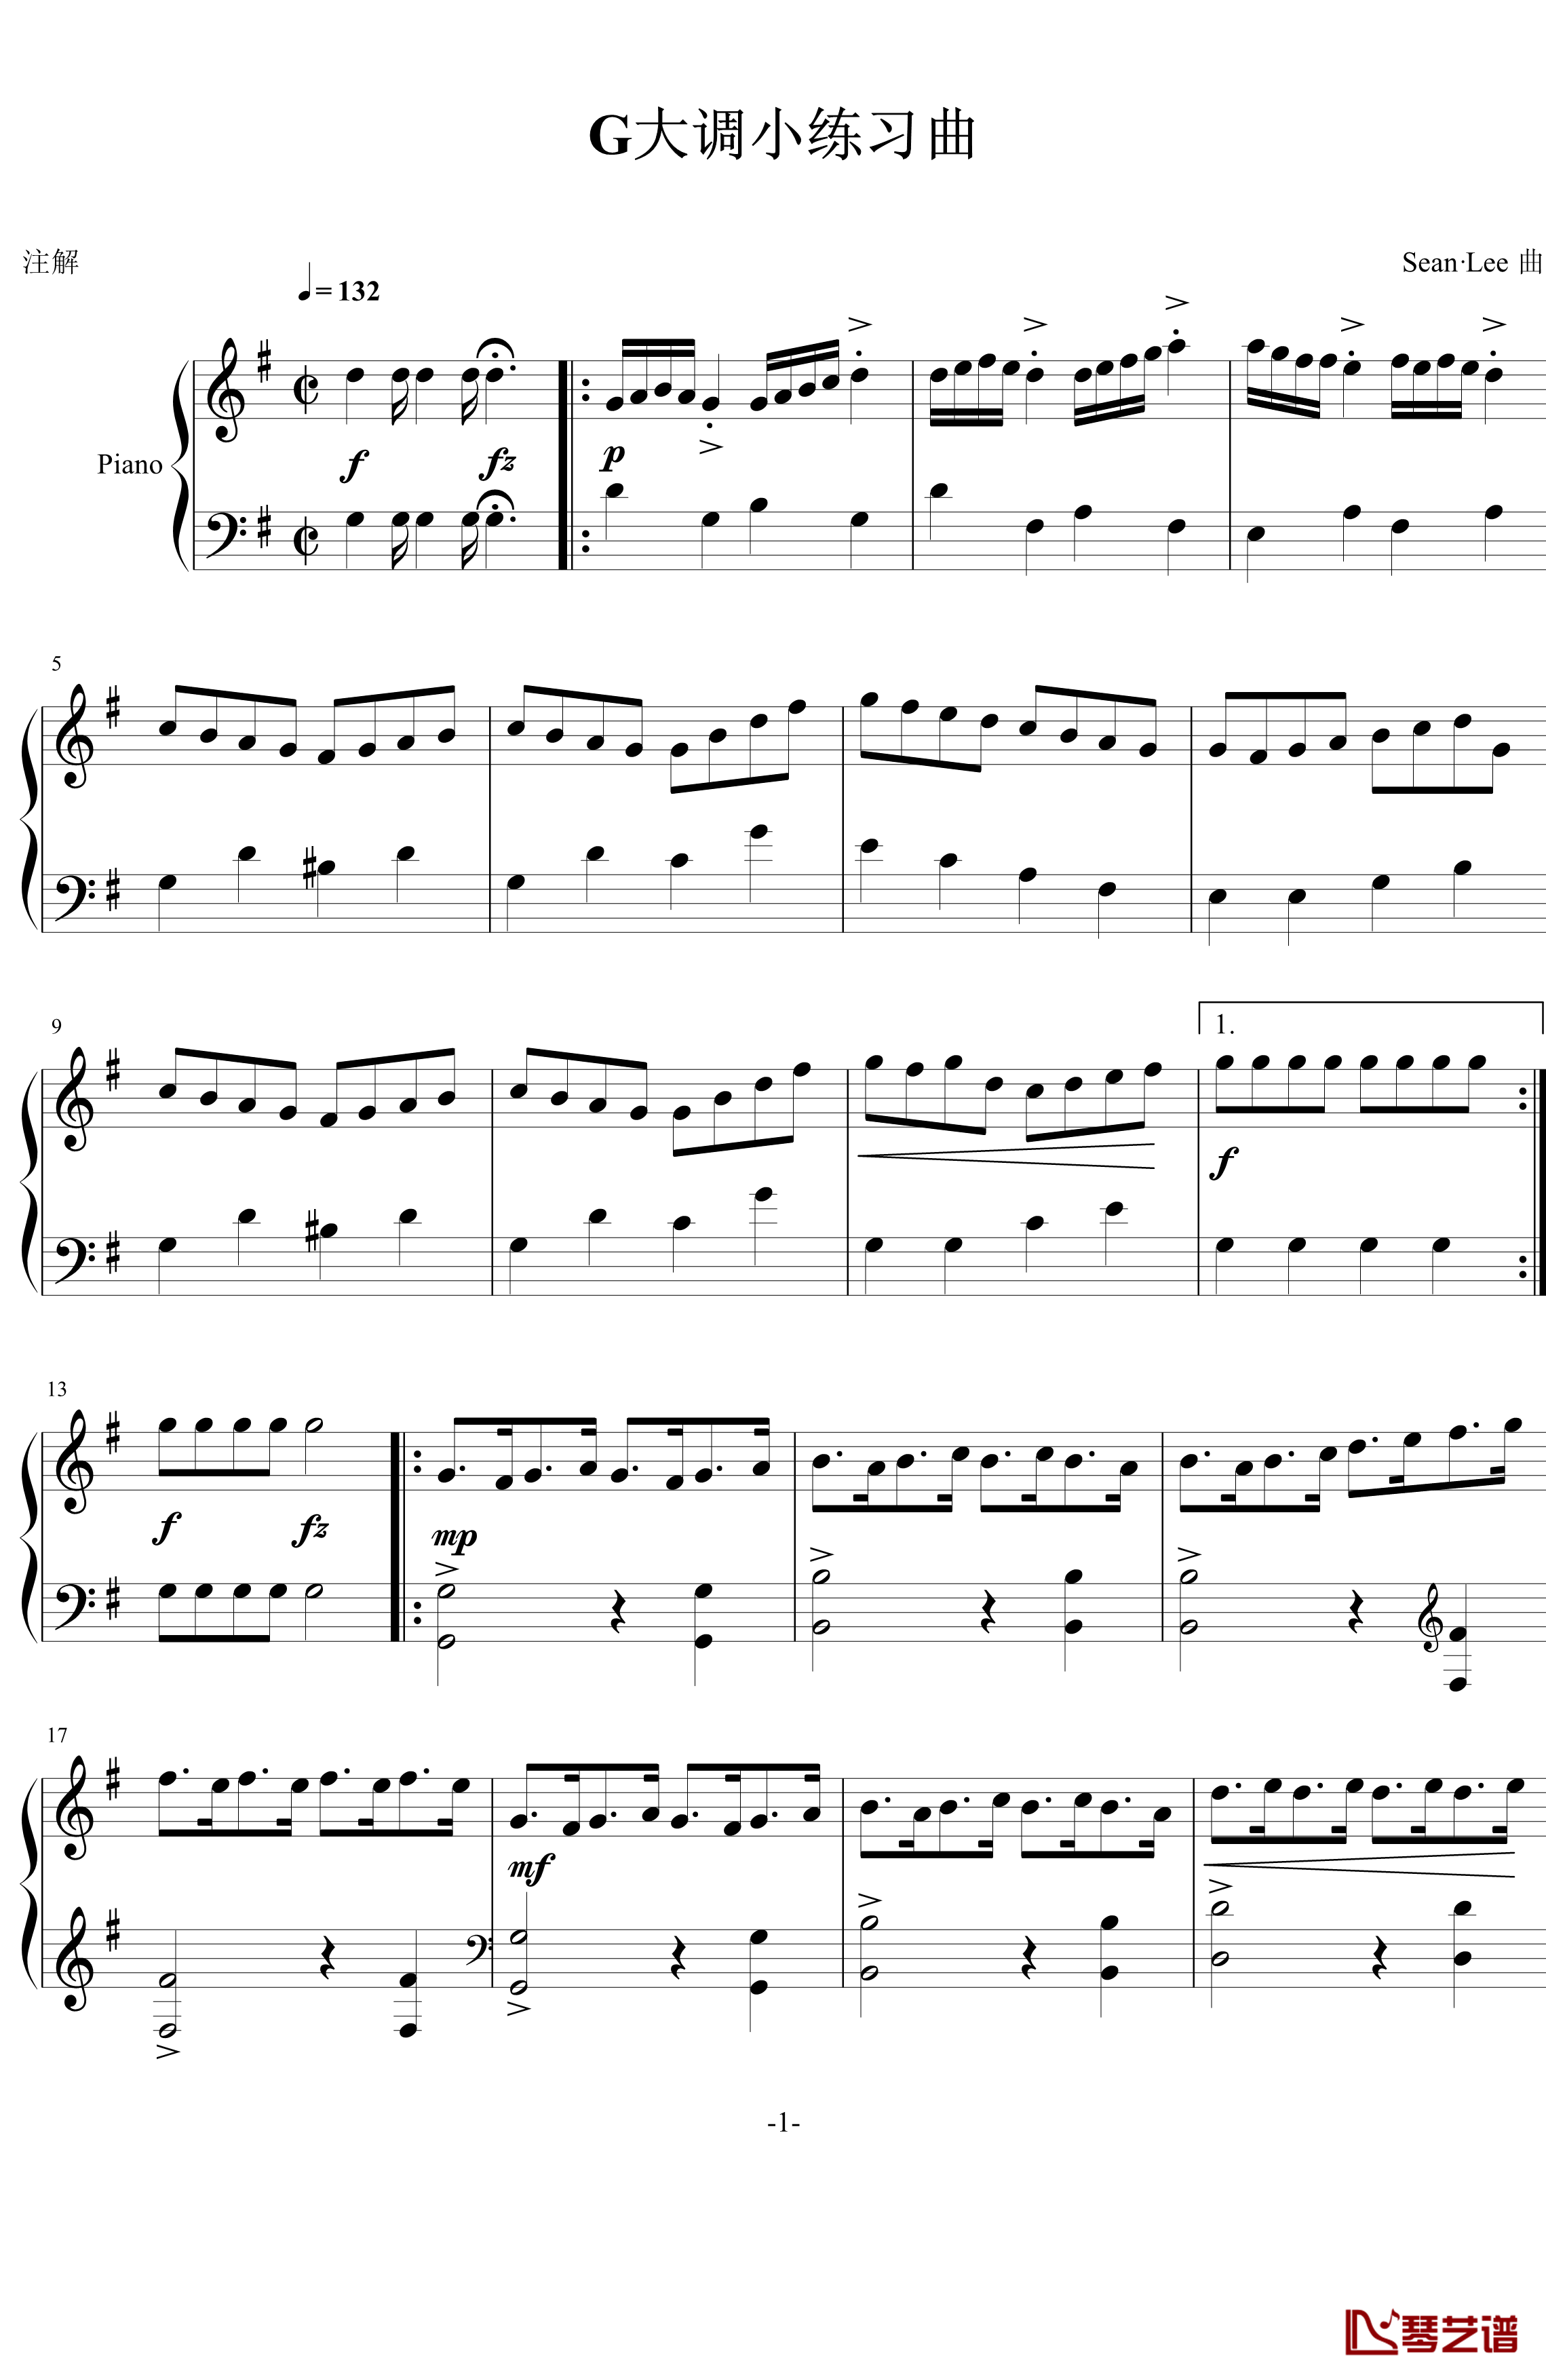 G大调小练习曲钢琴谱-天斗星罗1